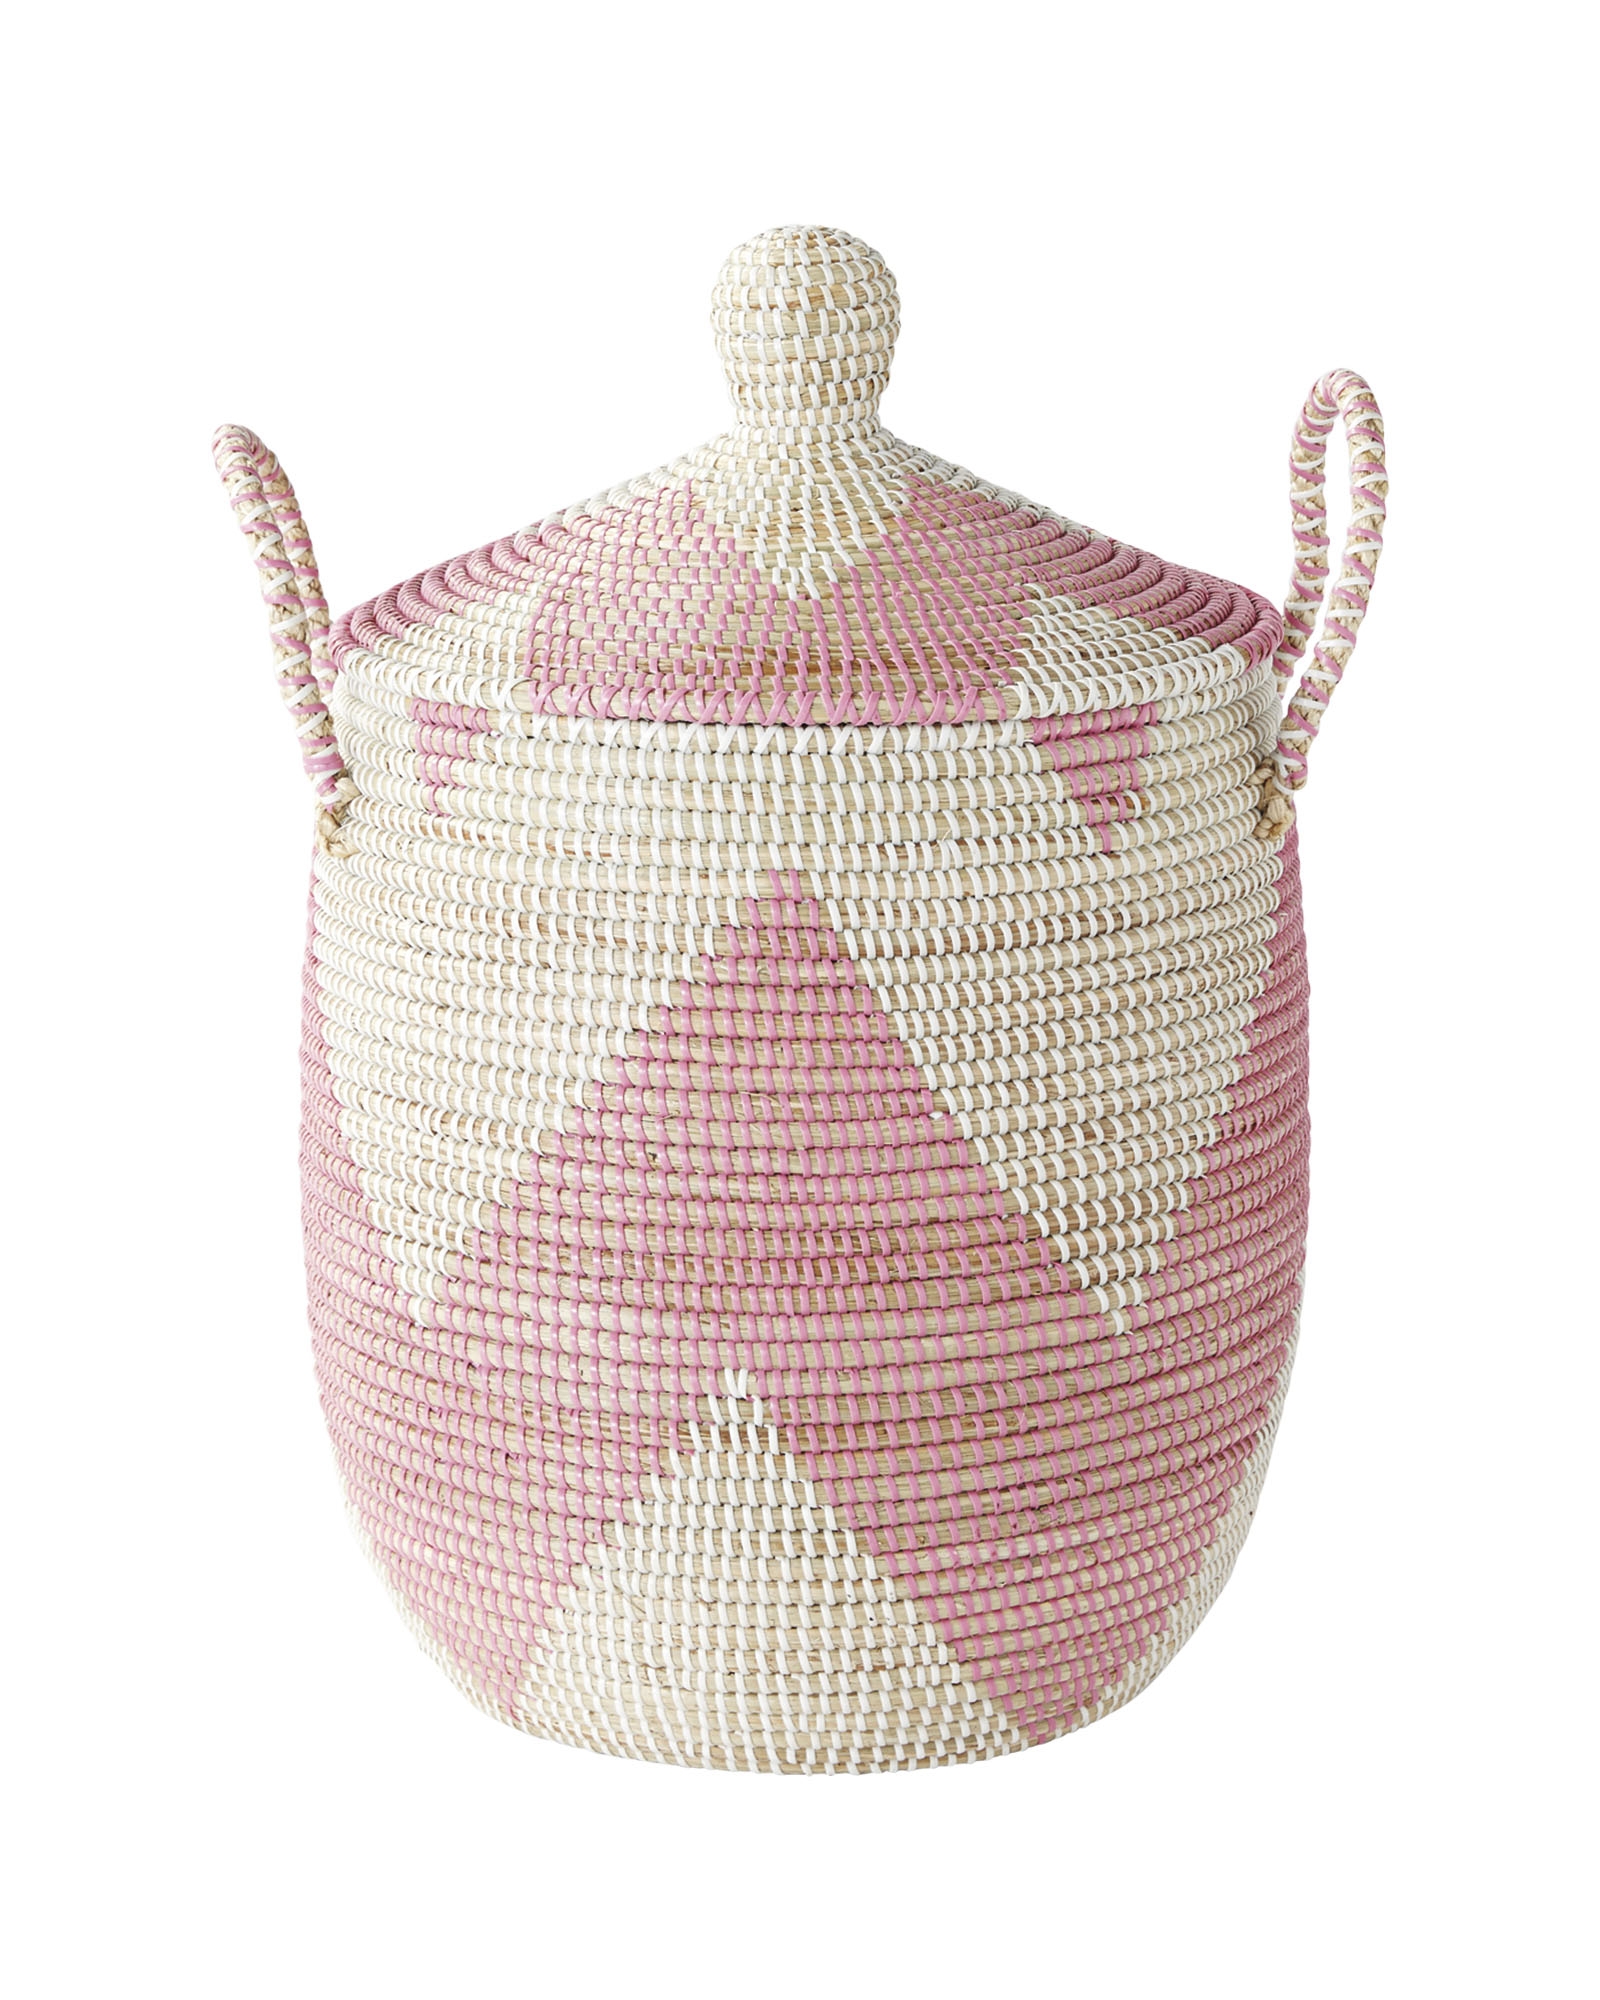 Striped La Jolla Basket - Pink - Small - Image 0